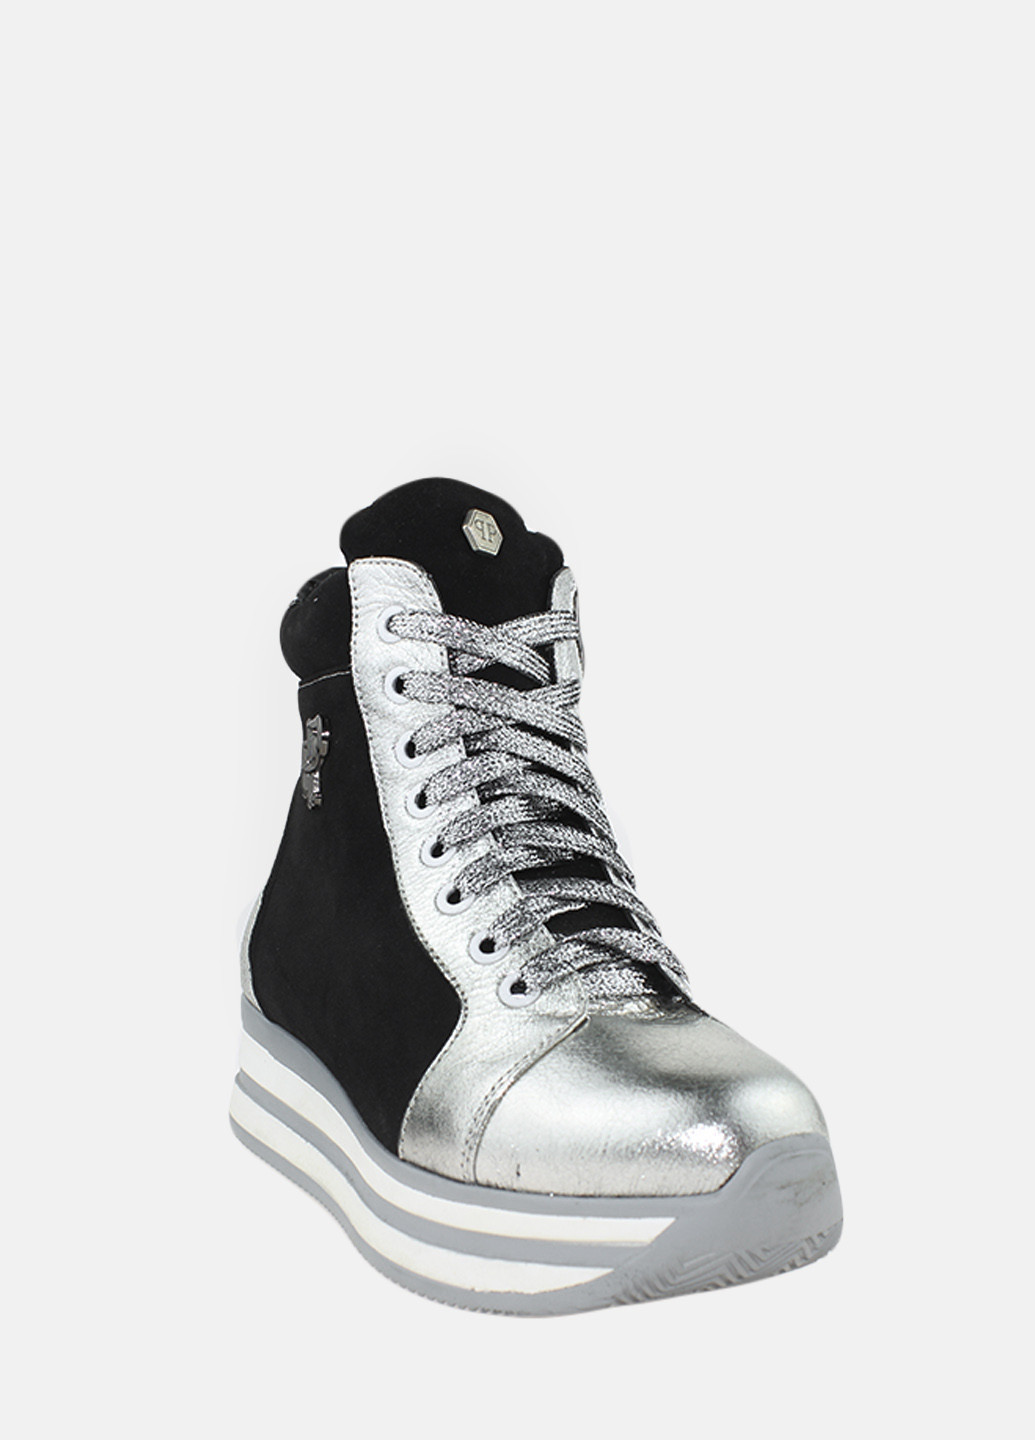 Зимние ботинки ry500-1 серебро-черный Yta из натуральной замши